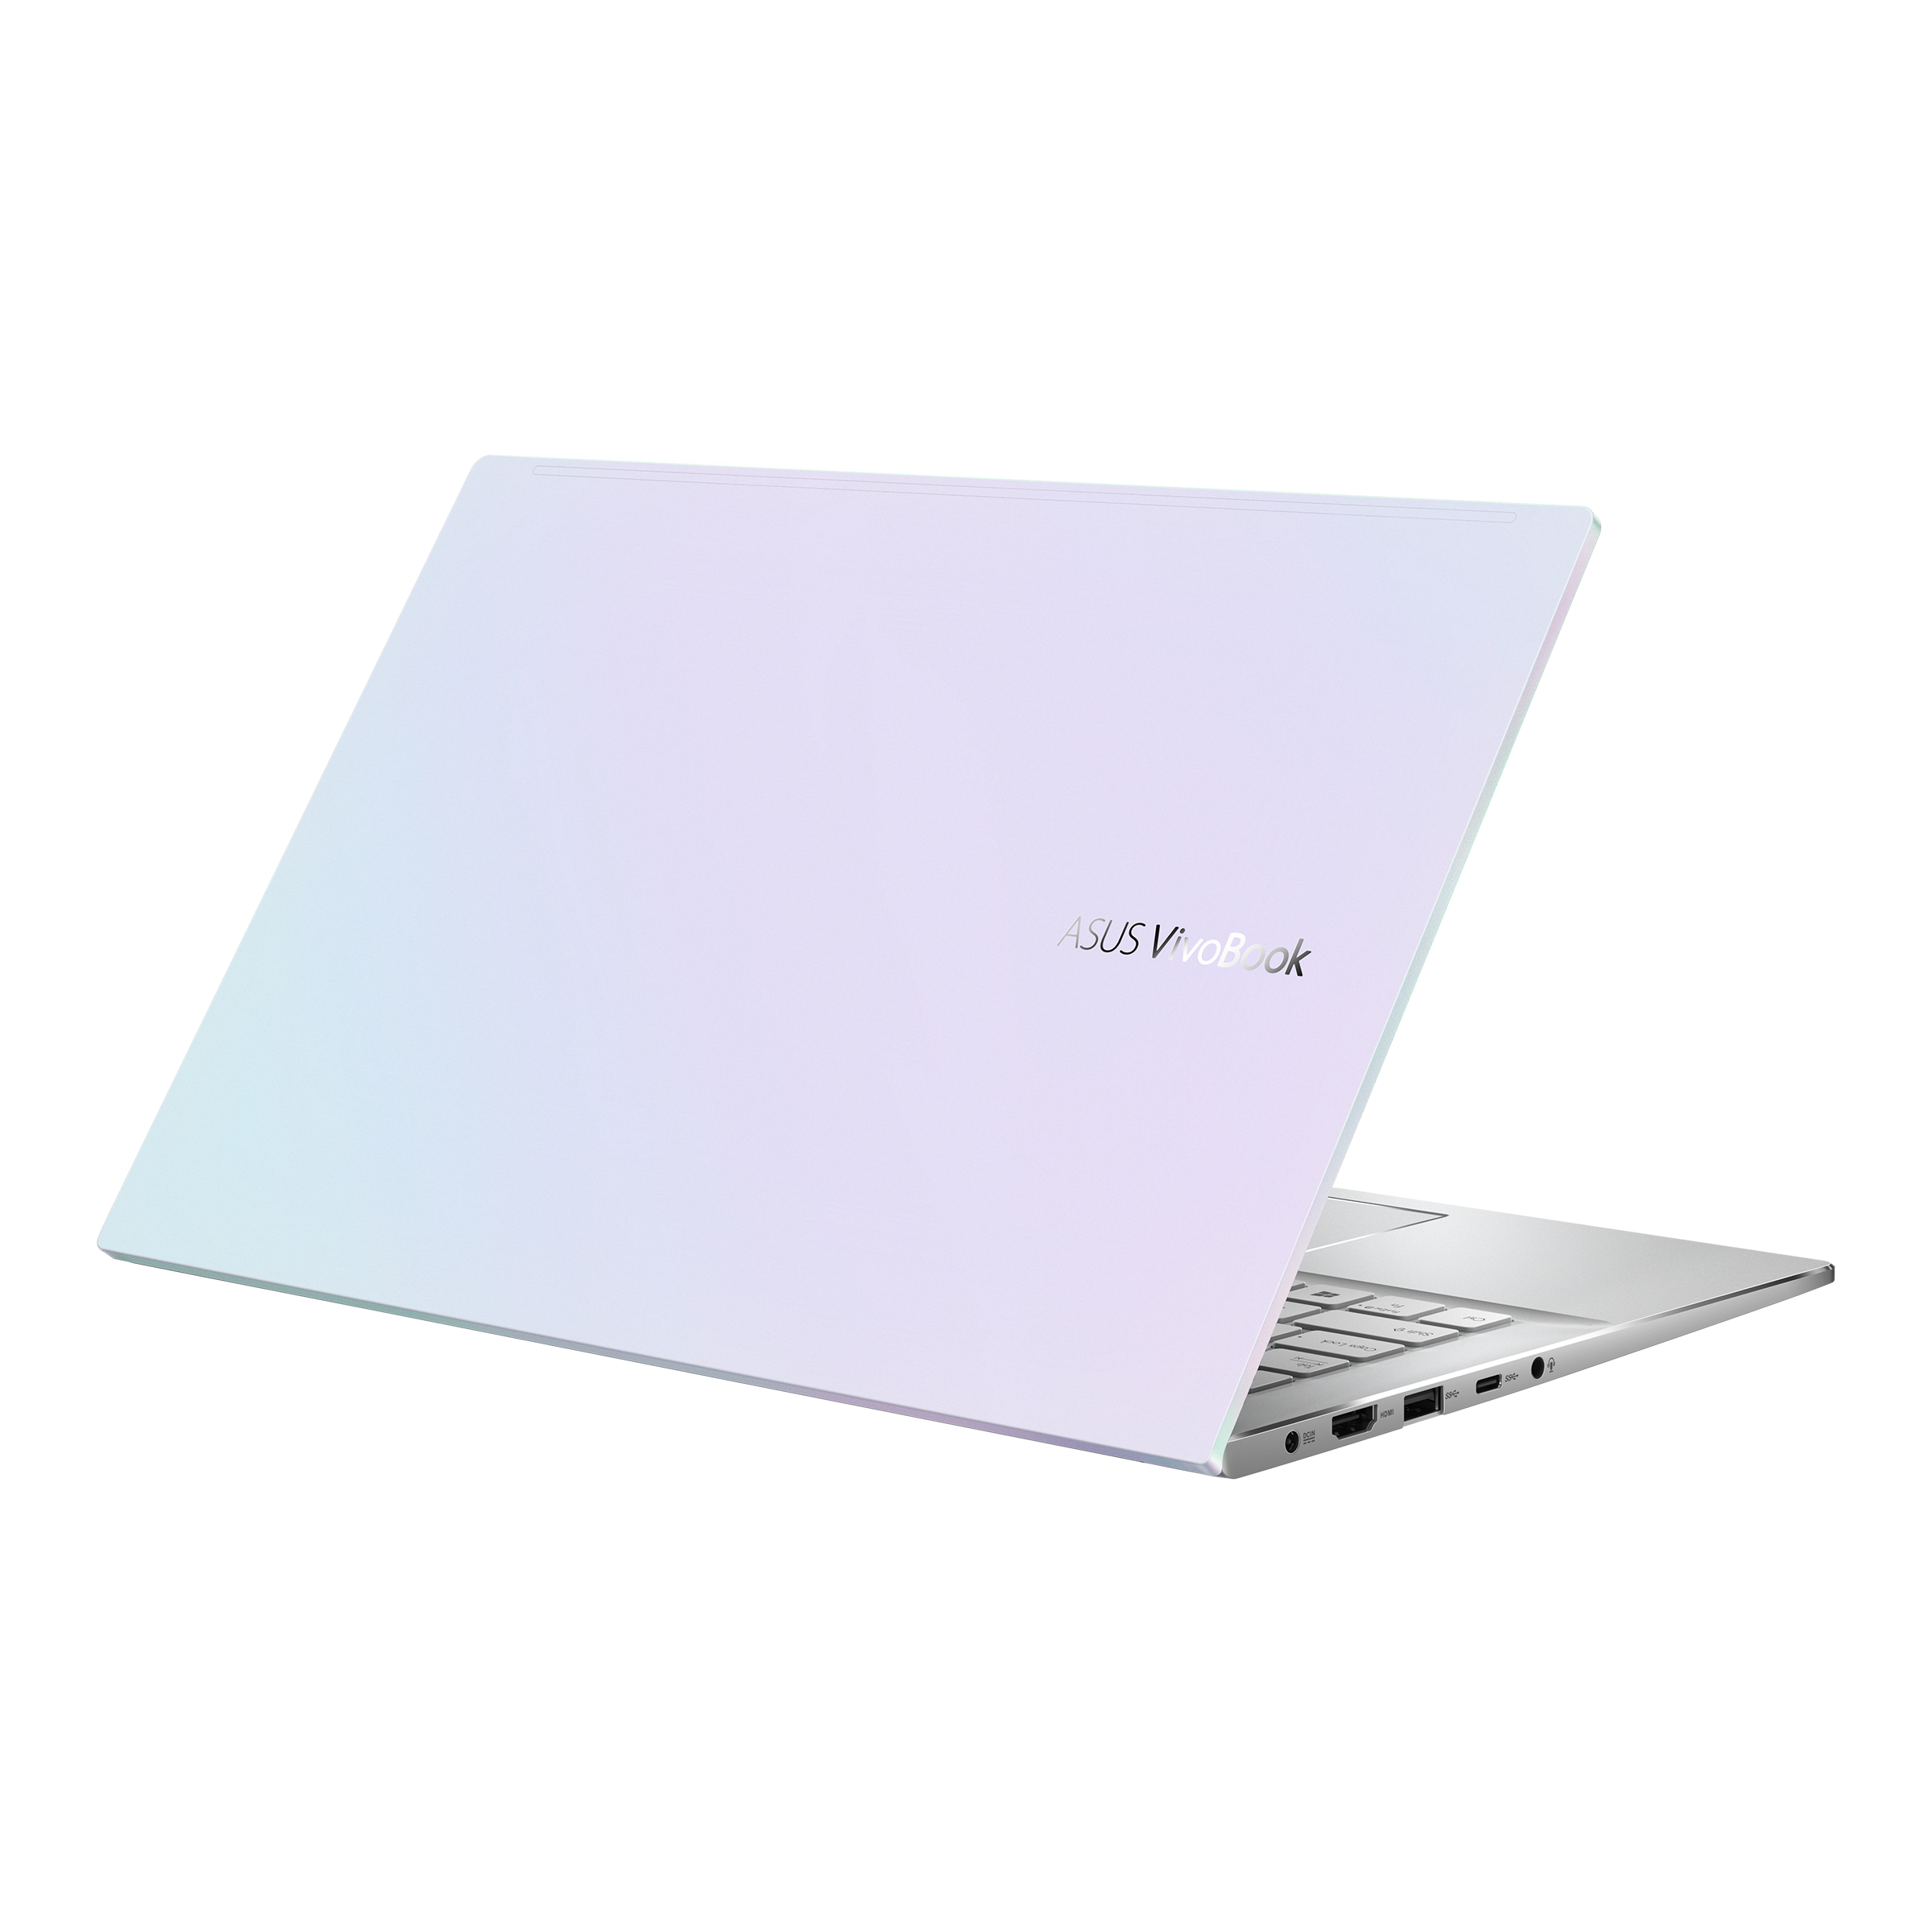 Vivobook S14 S433 (11th Gen Intel)